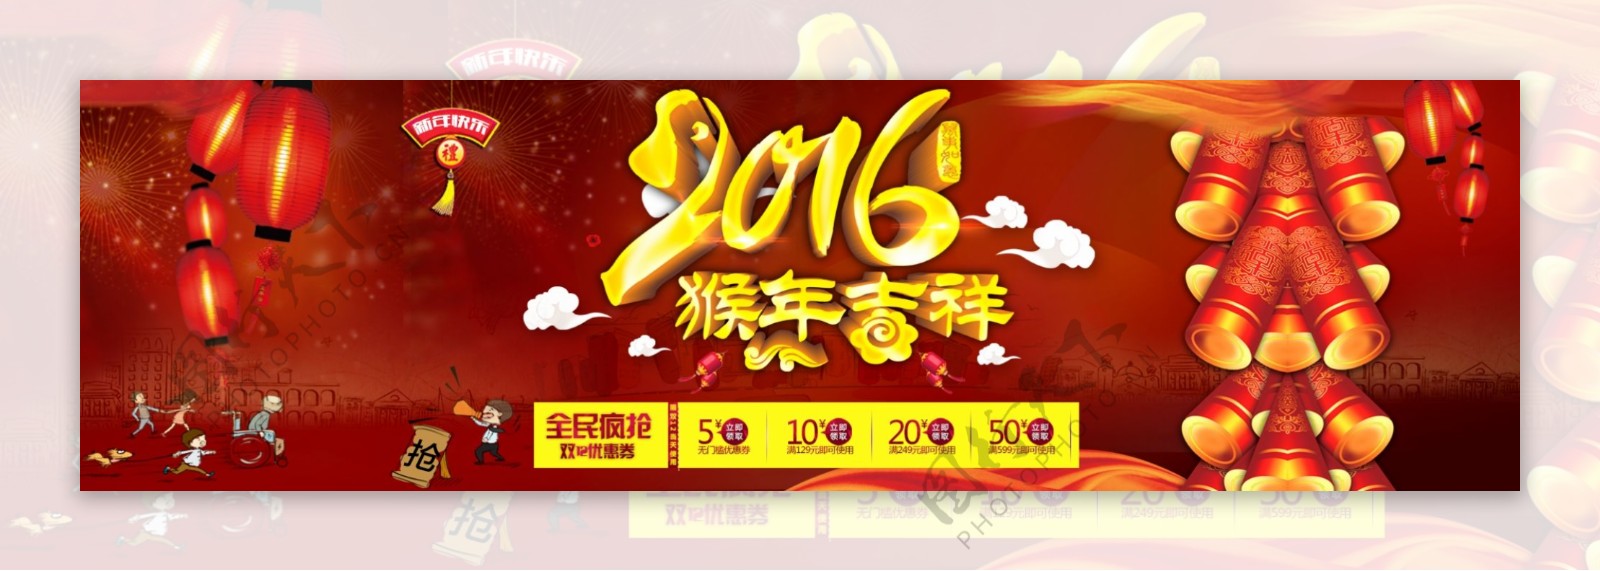 2016淘宝猴年新年店铺促销活动海报